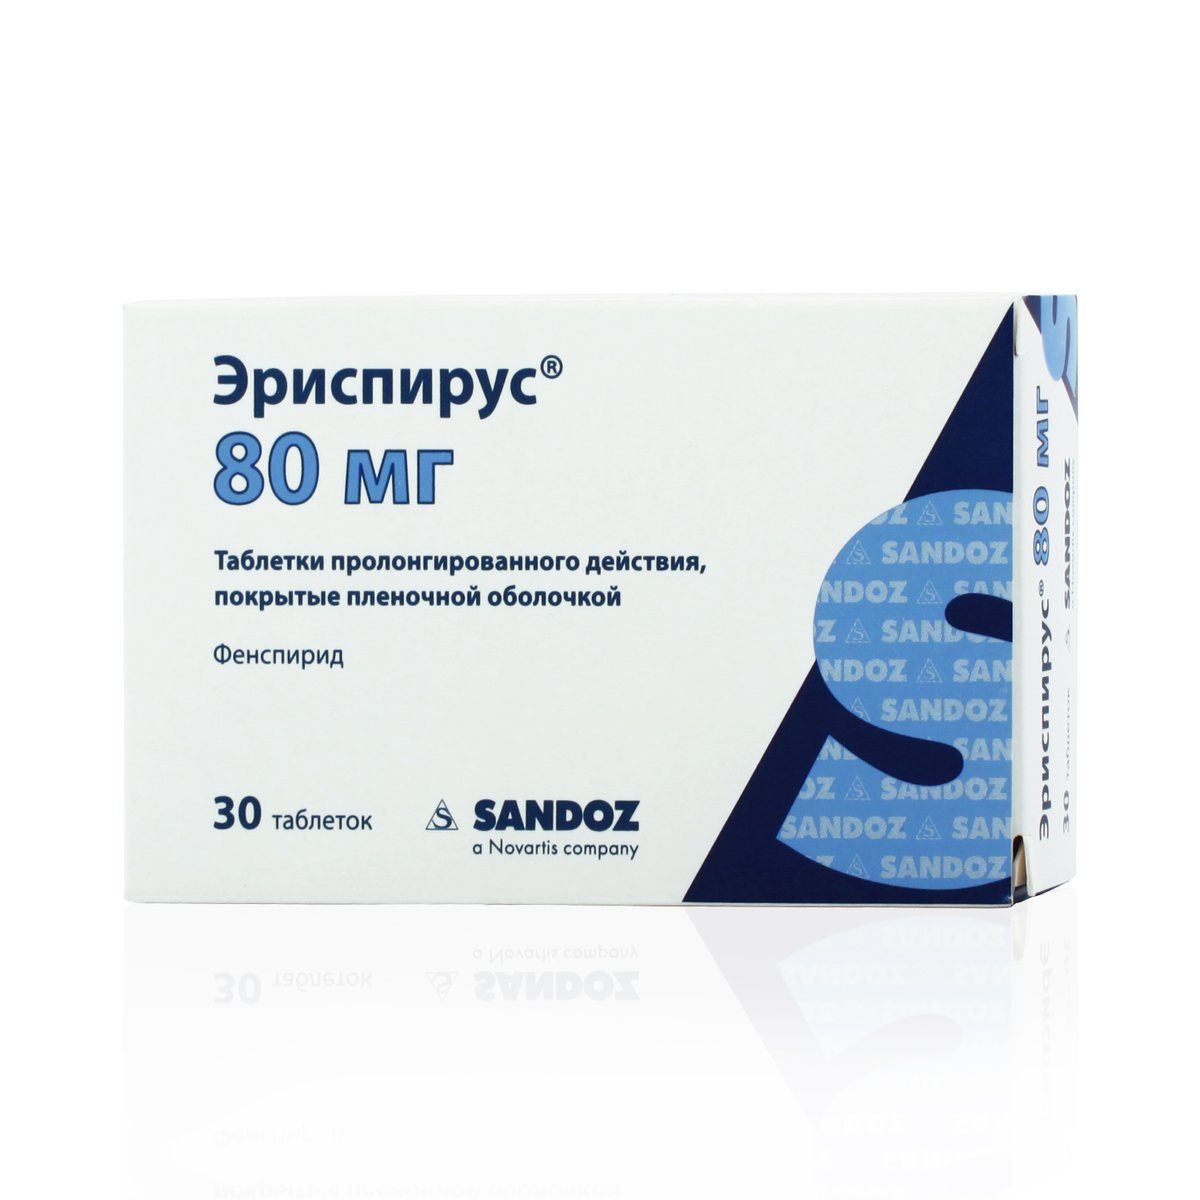 Эриспирус (таблетки, 30 шт, 80 мг) - цена,  онлайн  .